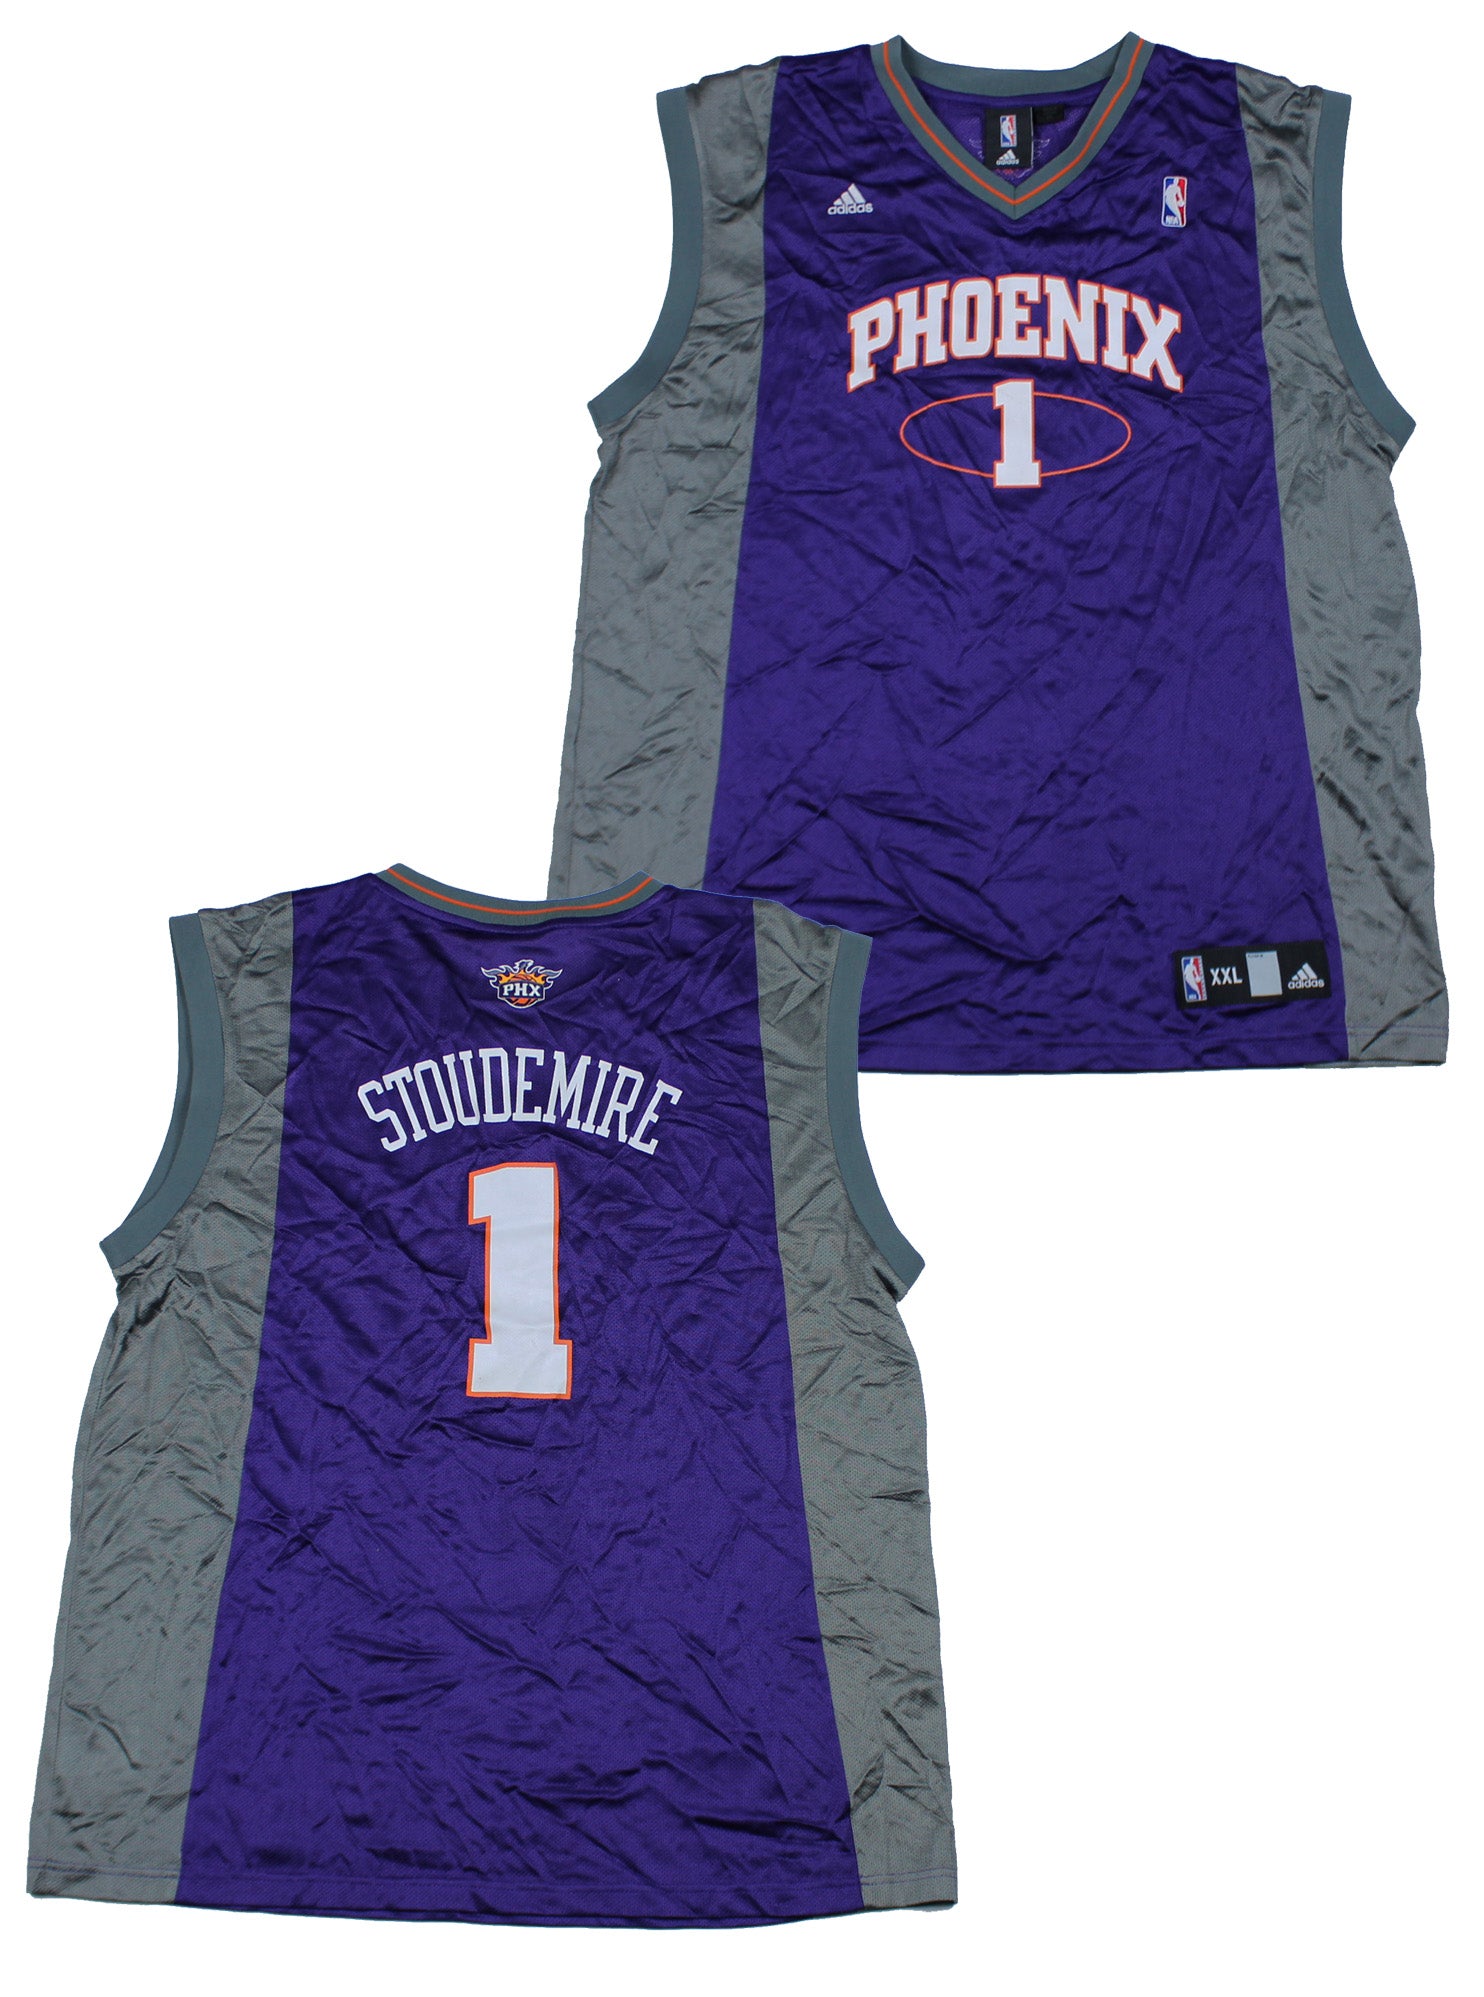 Official Phoenix Suns Jerseys, Suns Jersey, Suns Basketball Jerseys